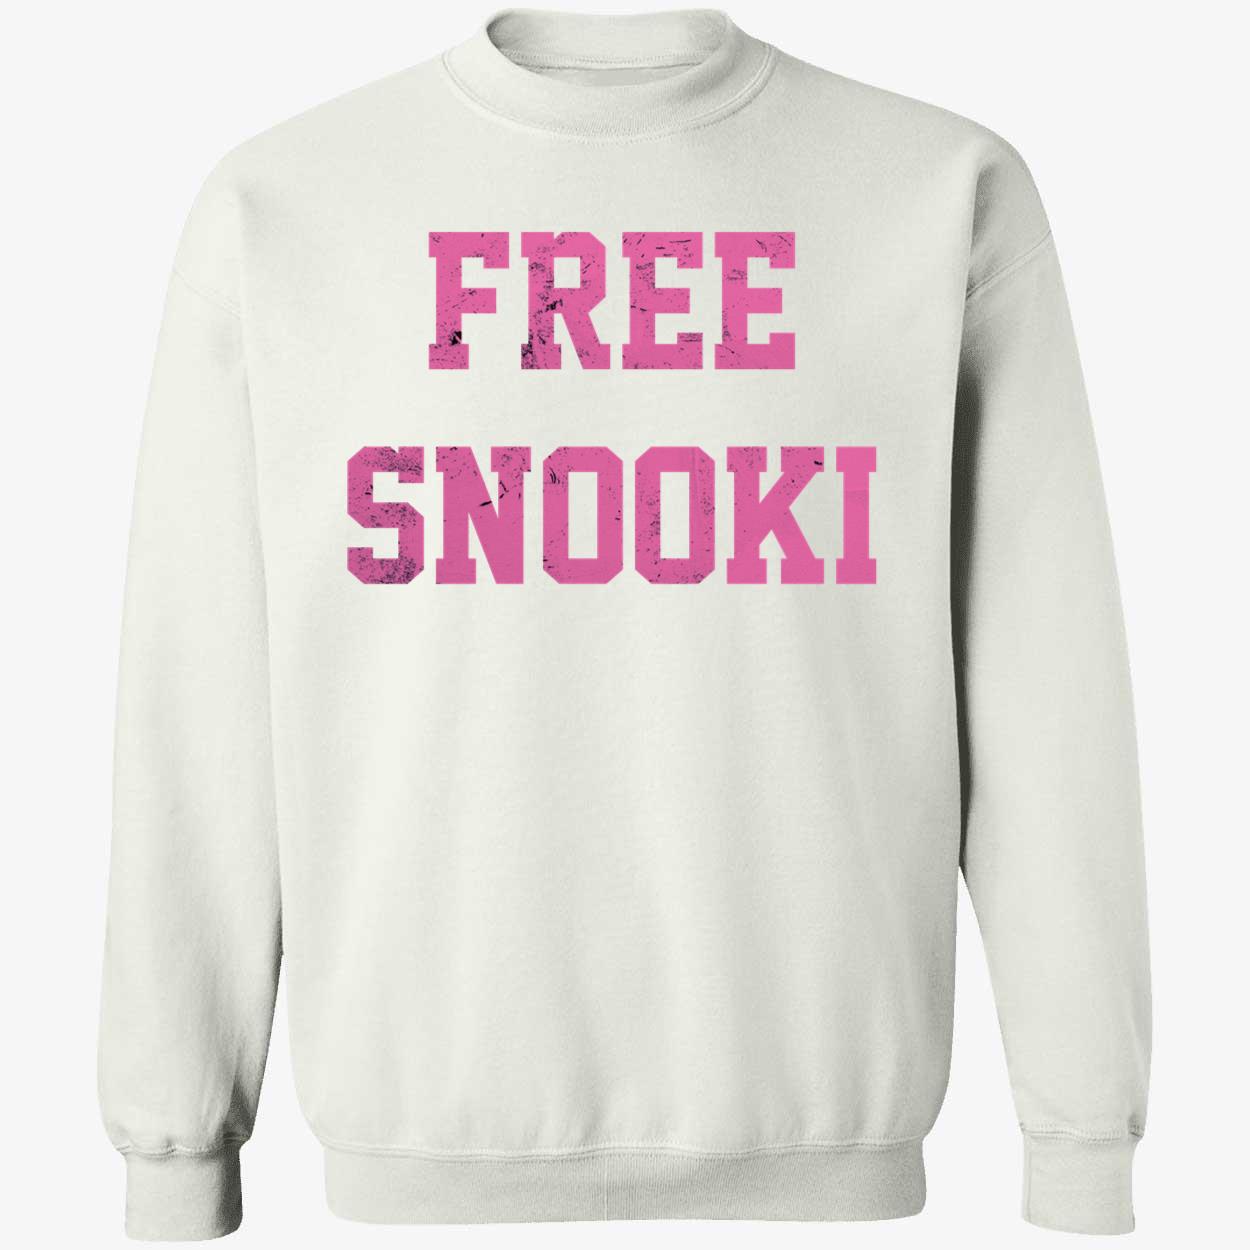 Free Snooki - Free Snooki - Long Sleeve T-Shirt